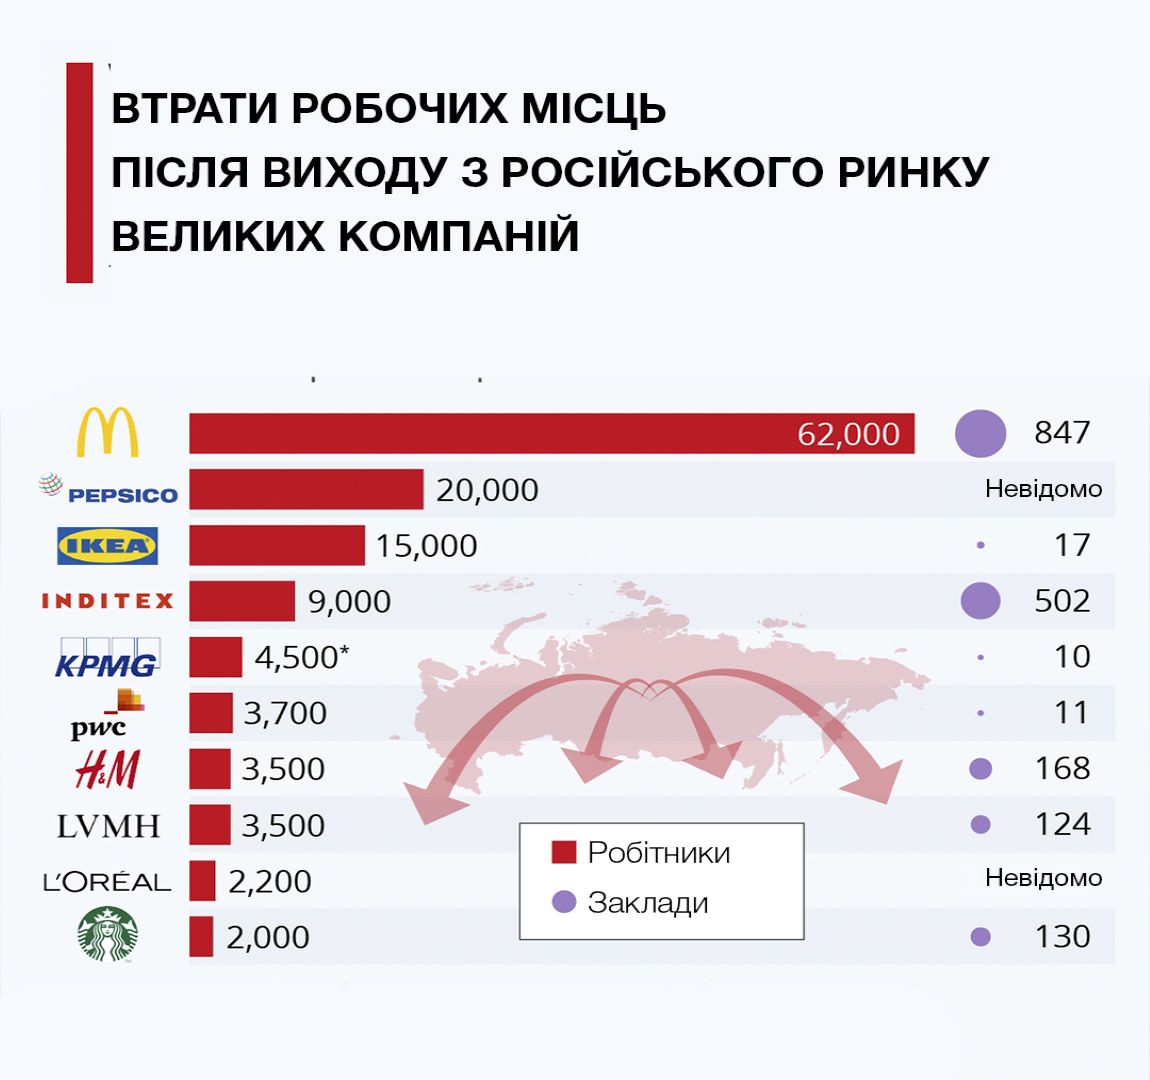 Последствия выхода крупных компаний с российского рынка  - фото 1